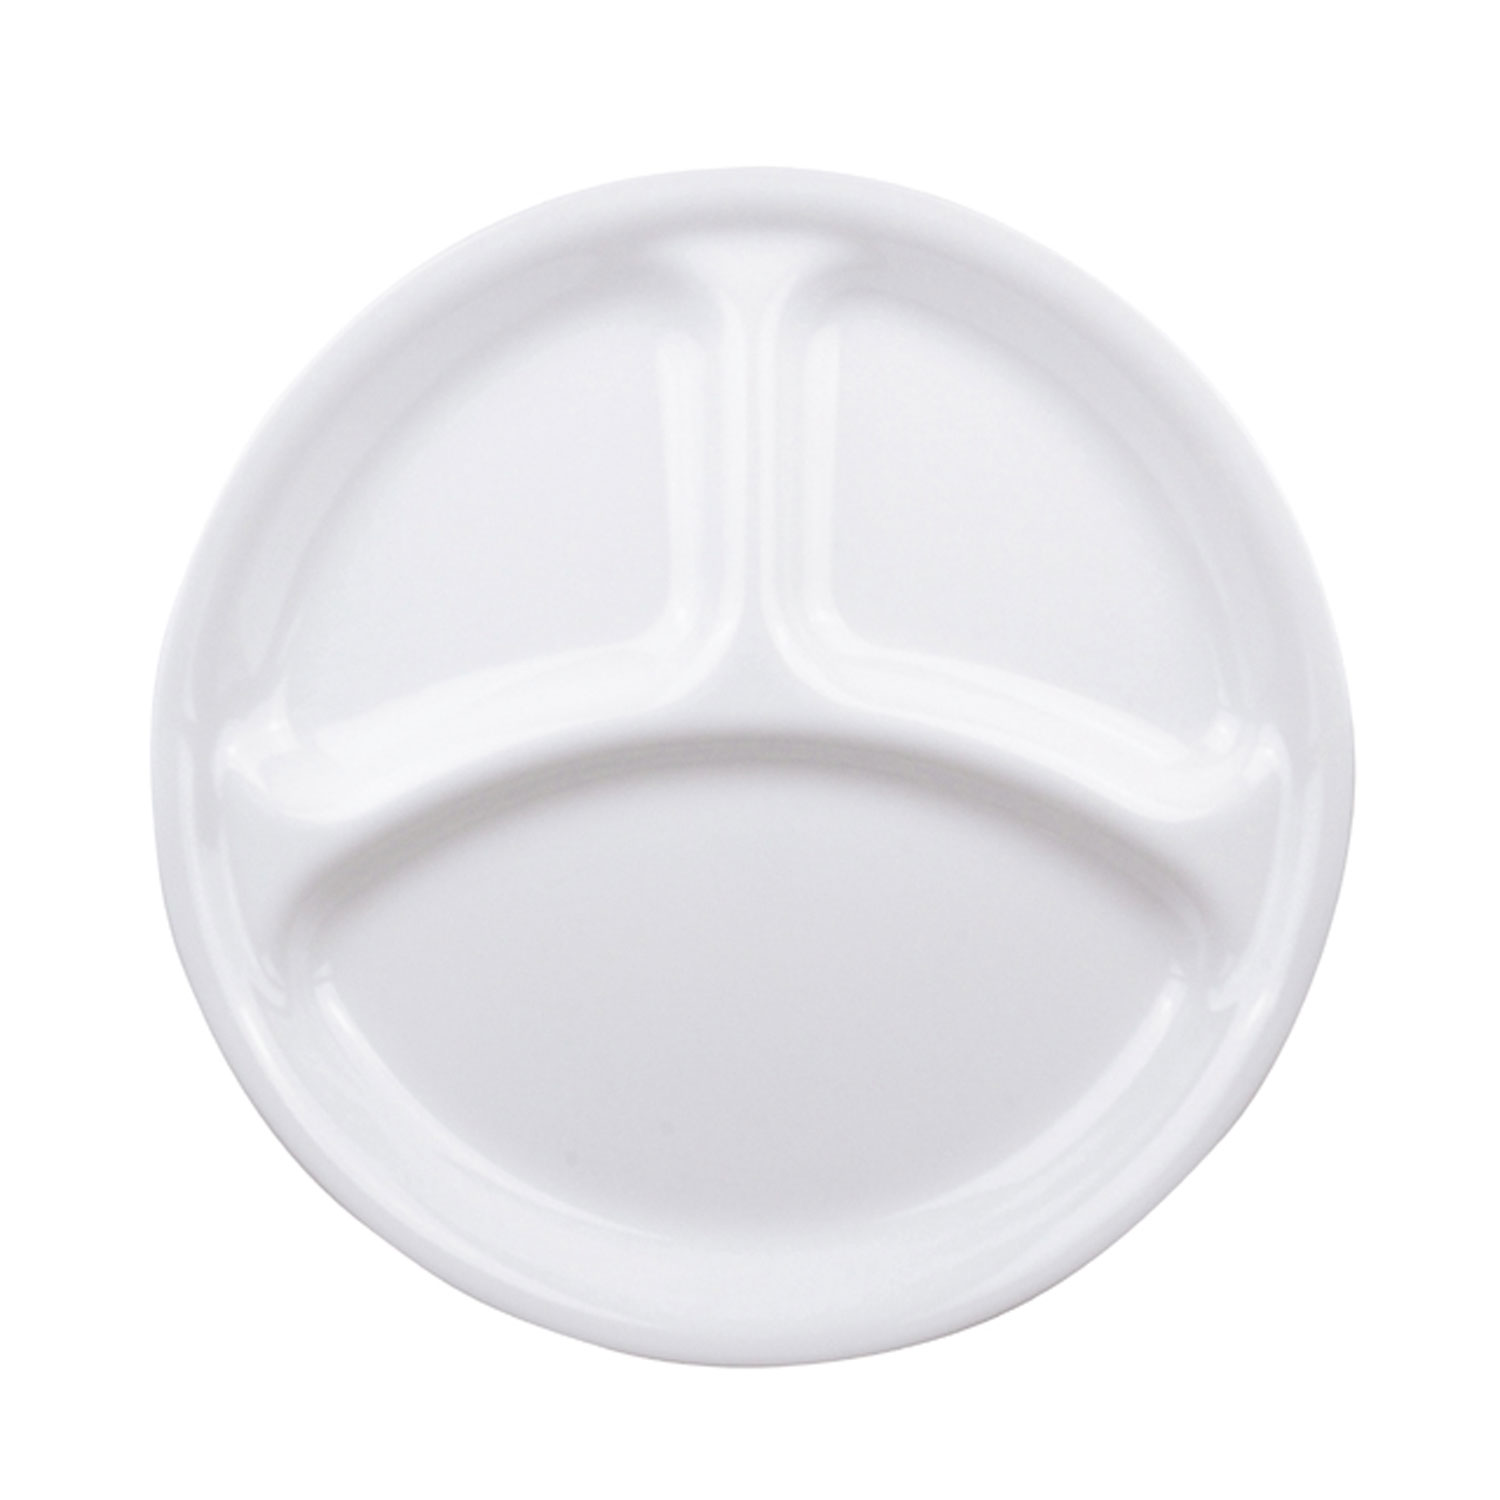 【5個】コレールN ランチ皿(大)J310 パール金属 ブランド食器 薄い 軽い 割れにくい ガラス 食器 00278605